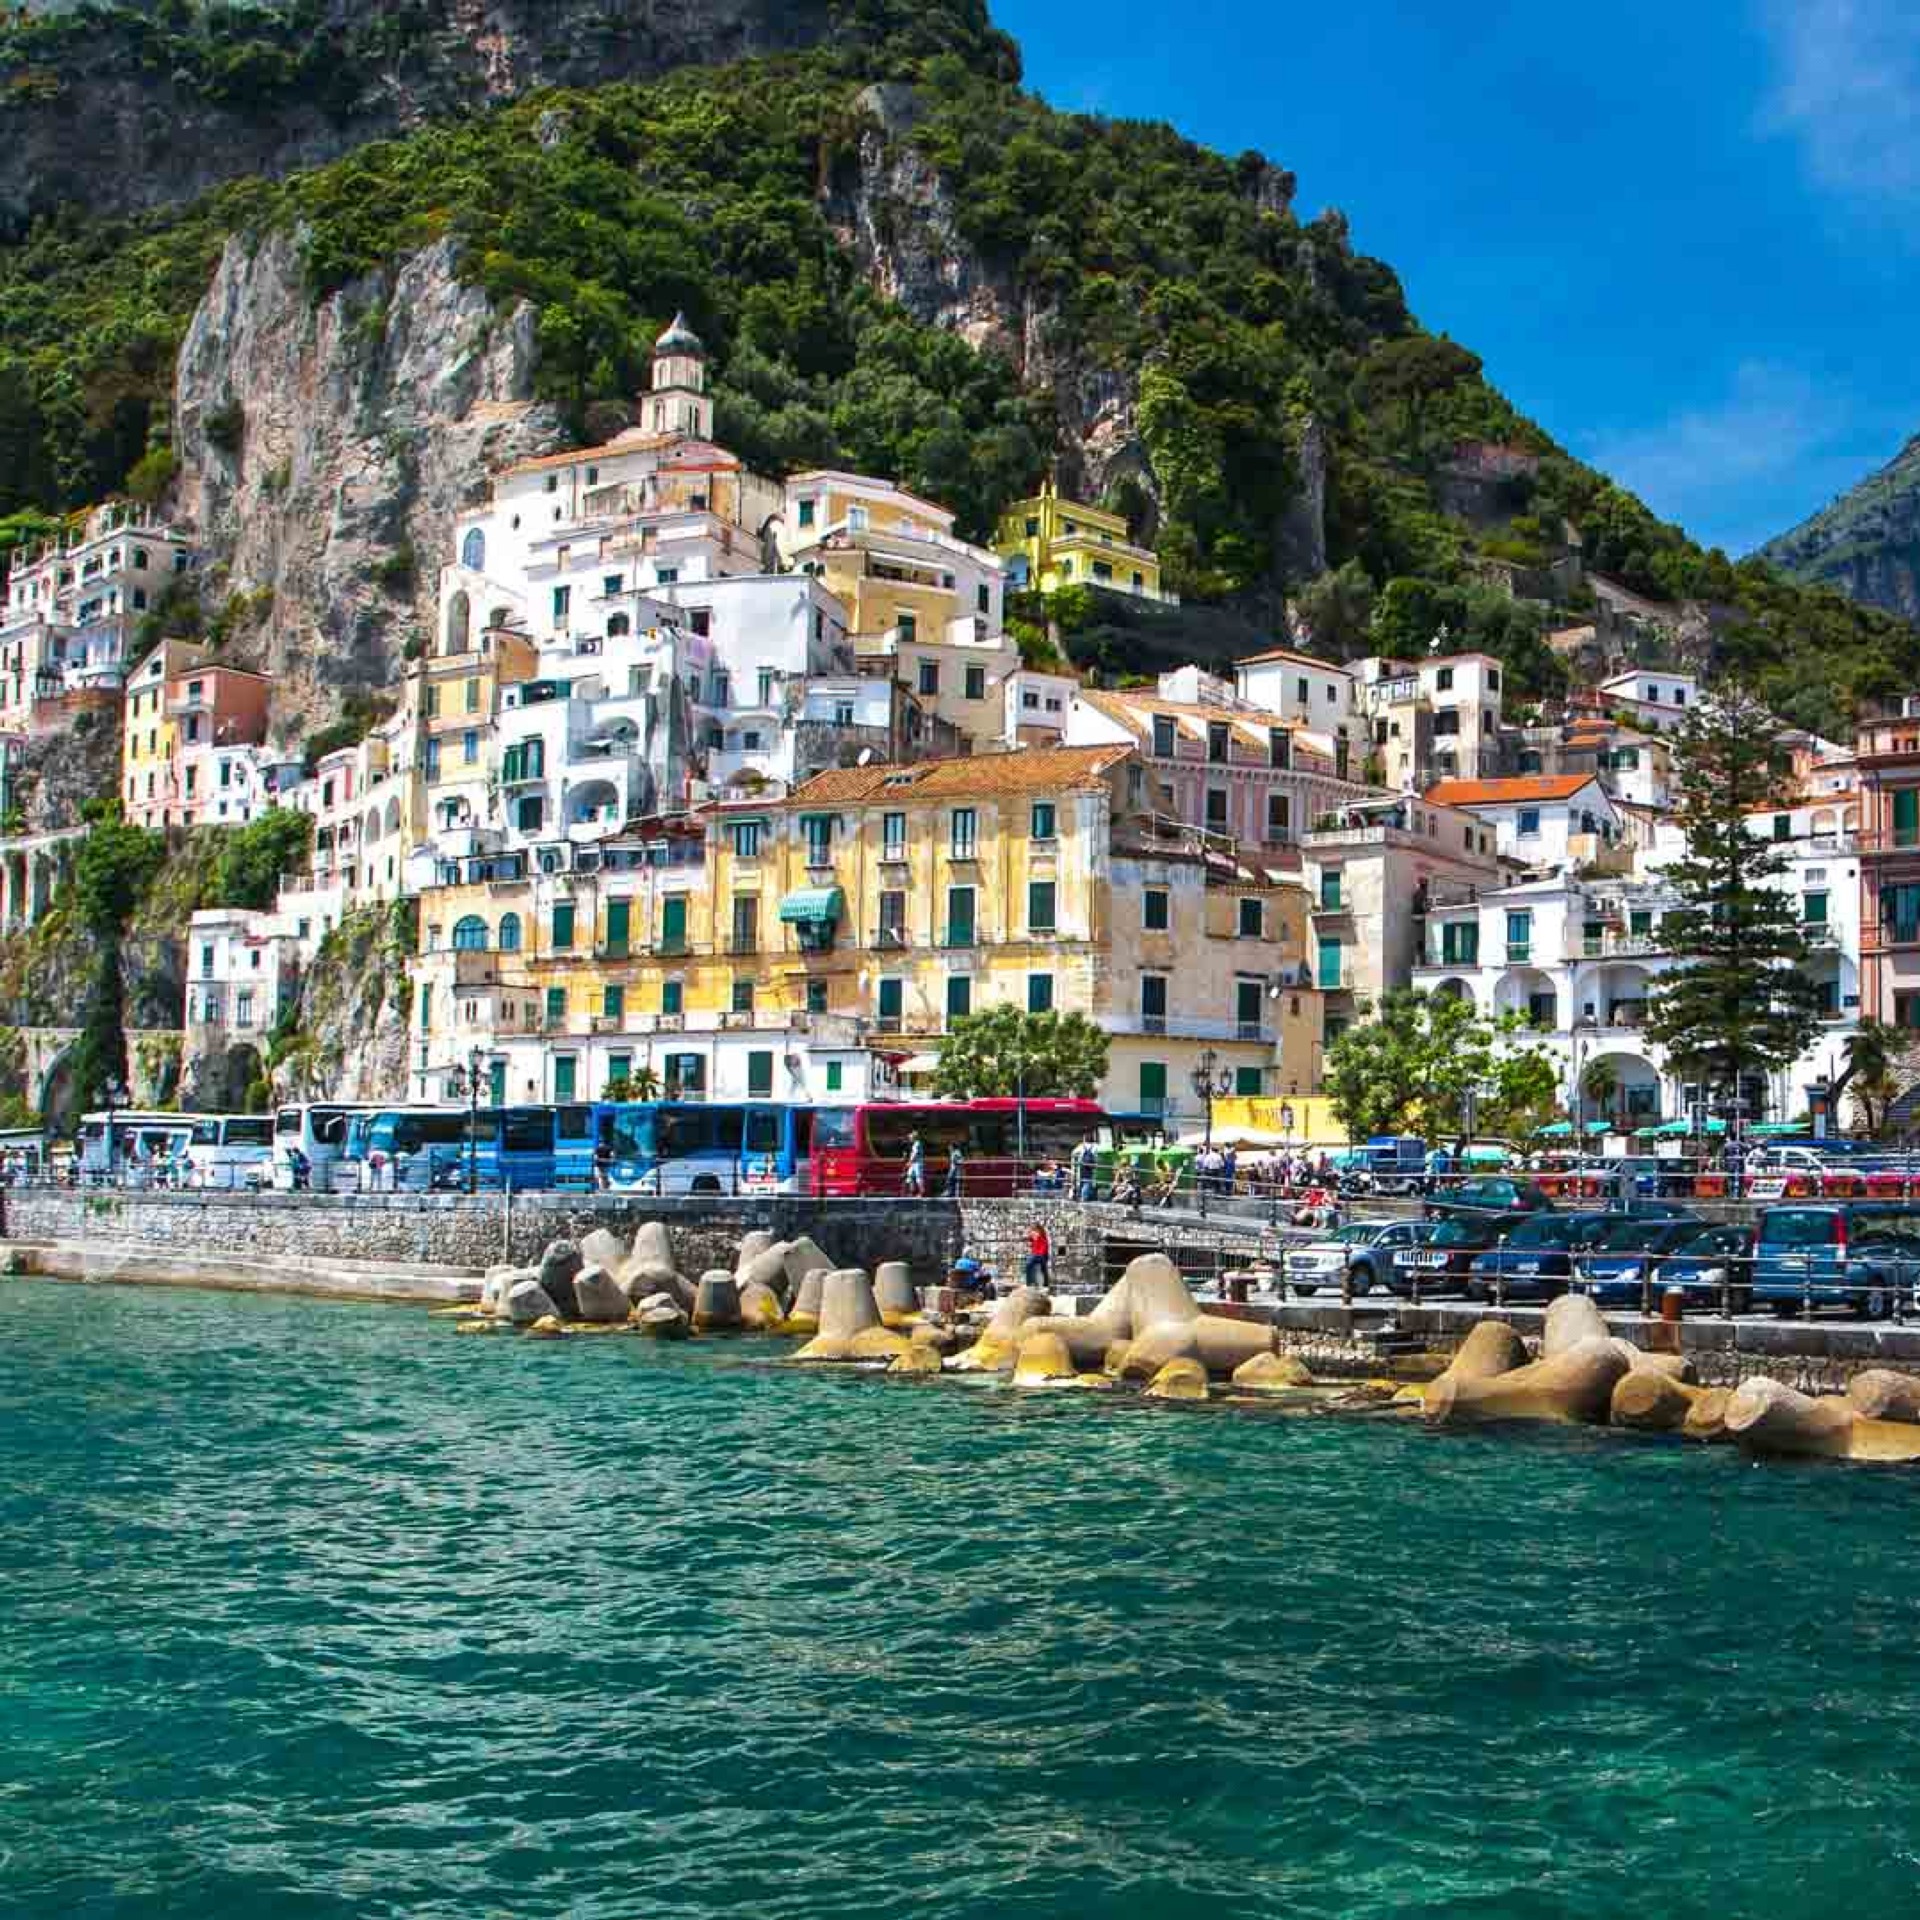 Naples / Amalfi Coast